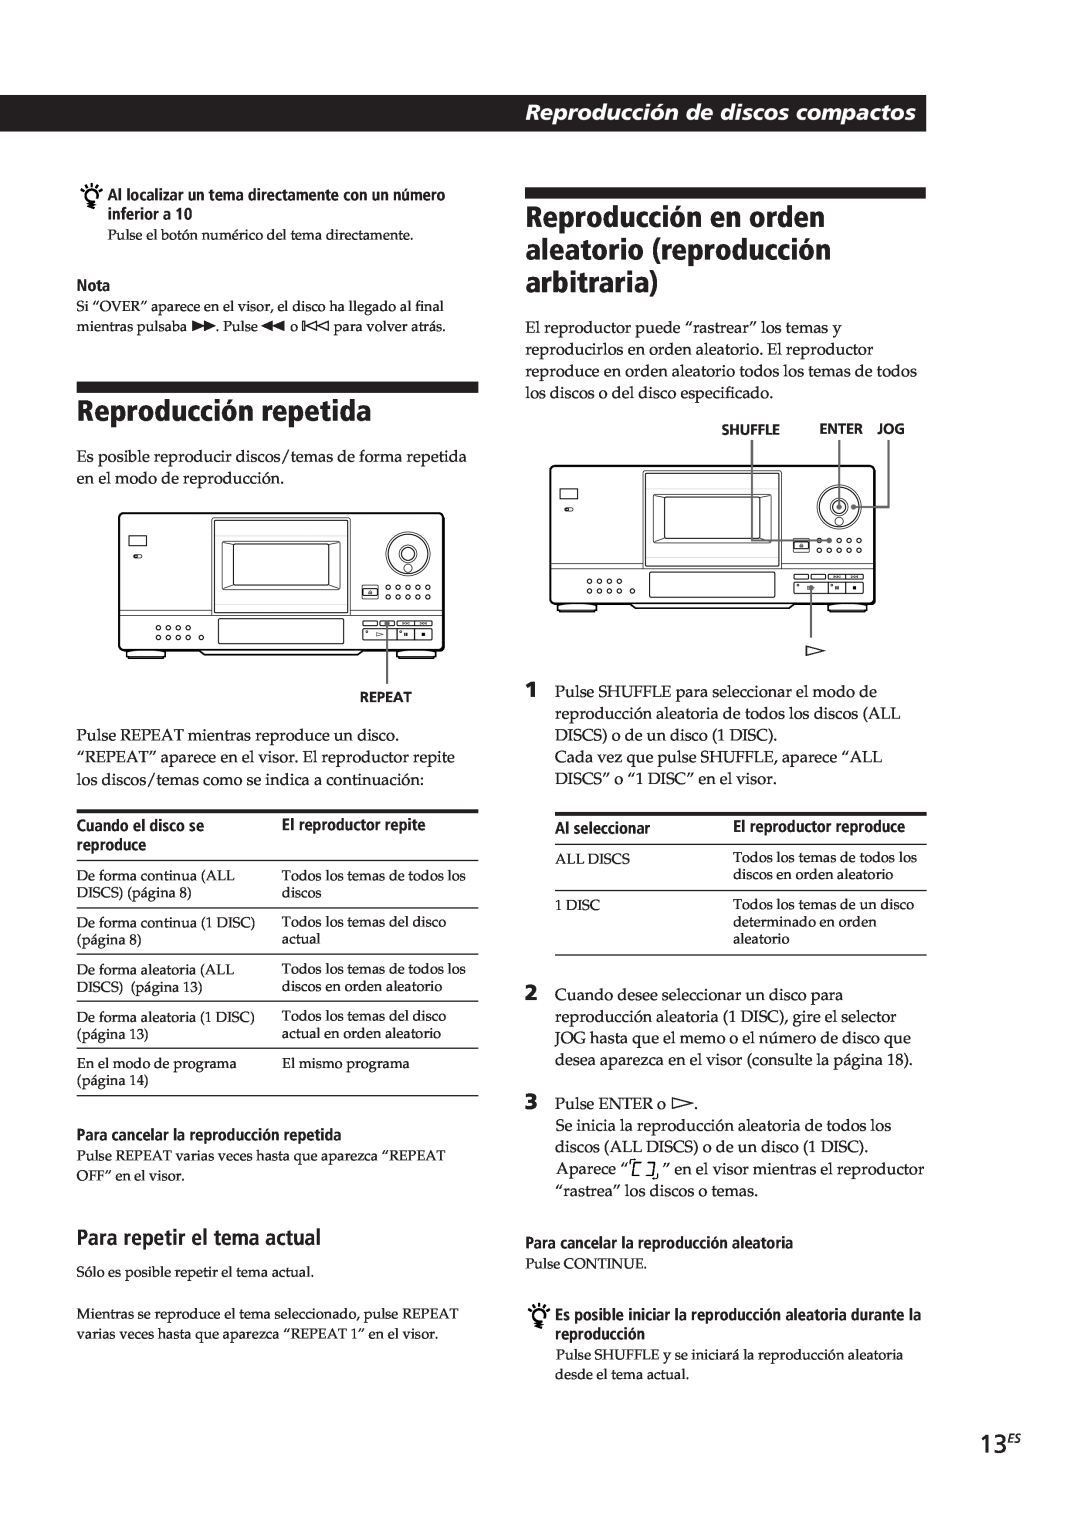 Sony CDP-CX153 Reproducción repetida, 13ES, Para repetir el tema actual, Reproducción de discos compactos, Nota, reproduce 